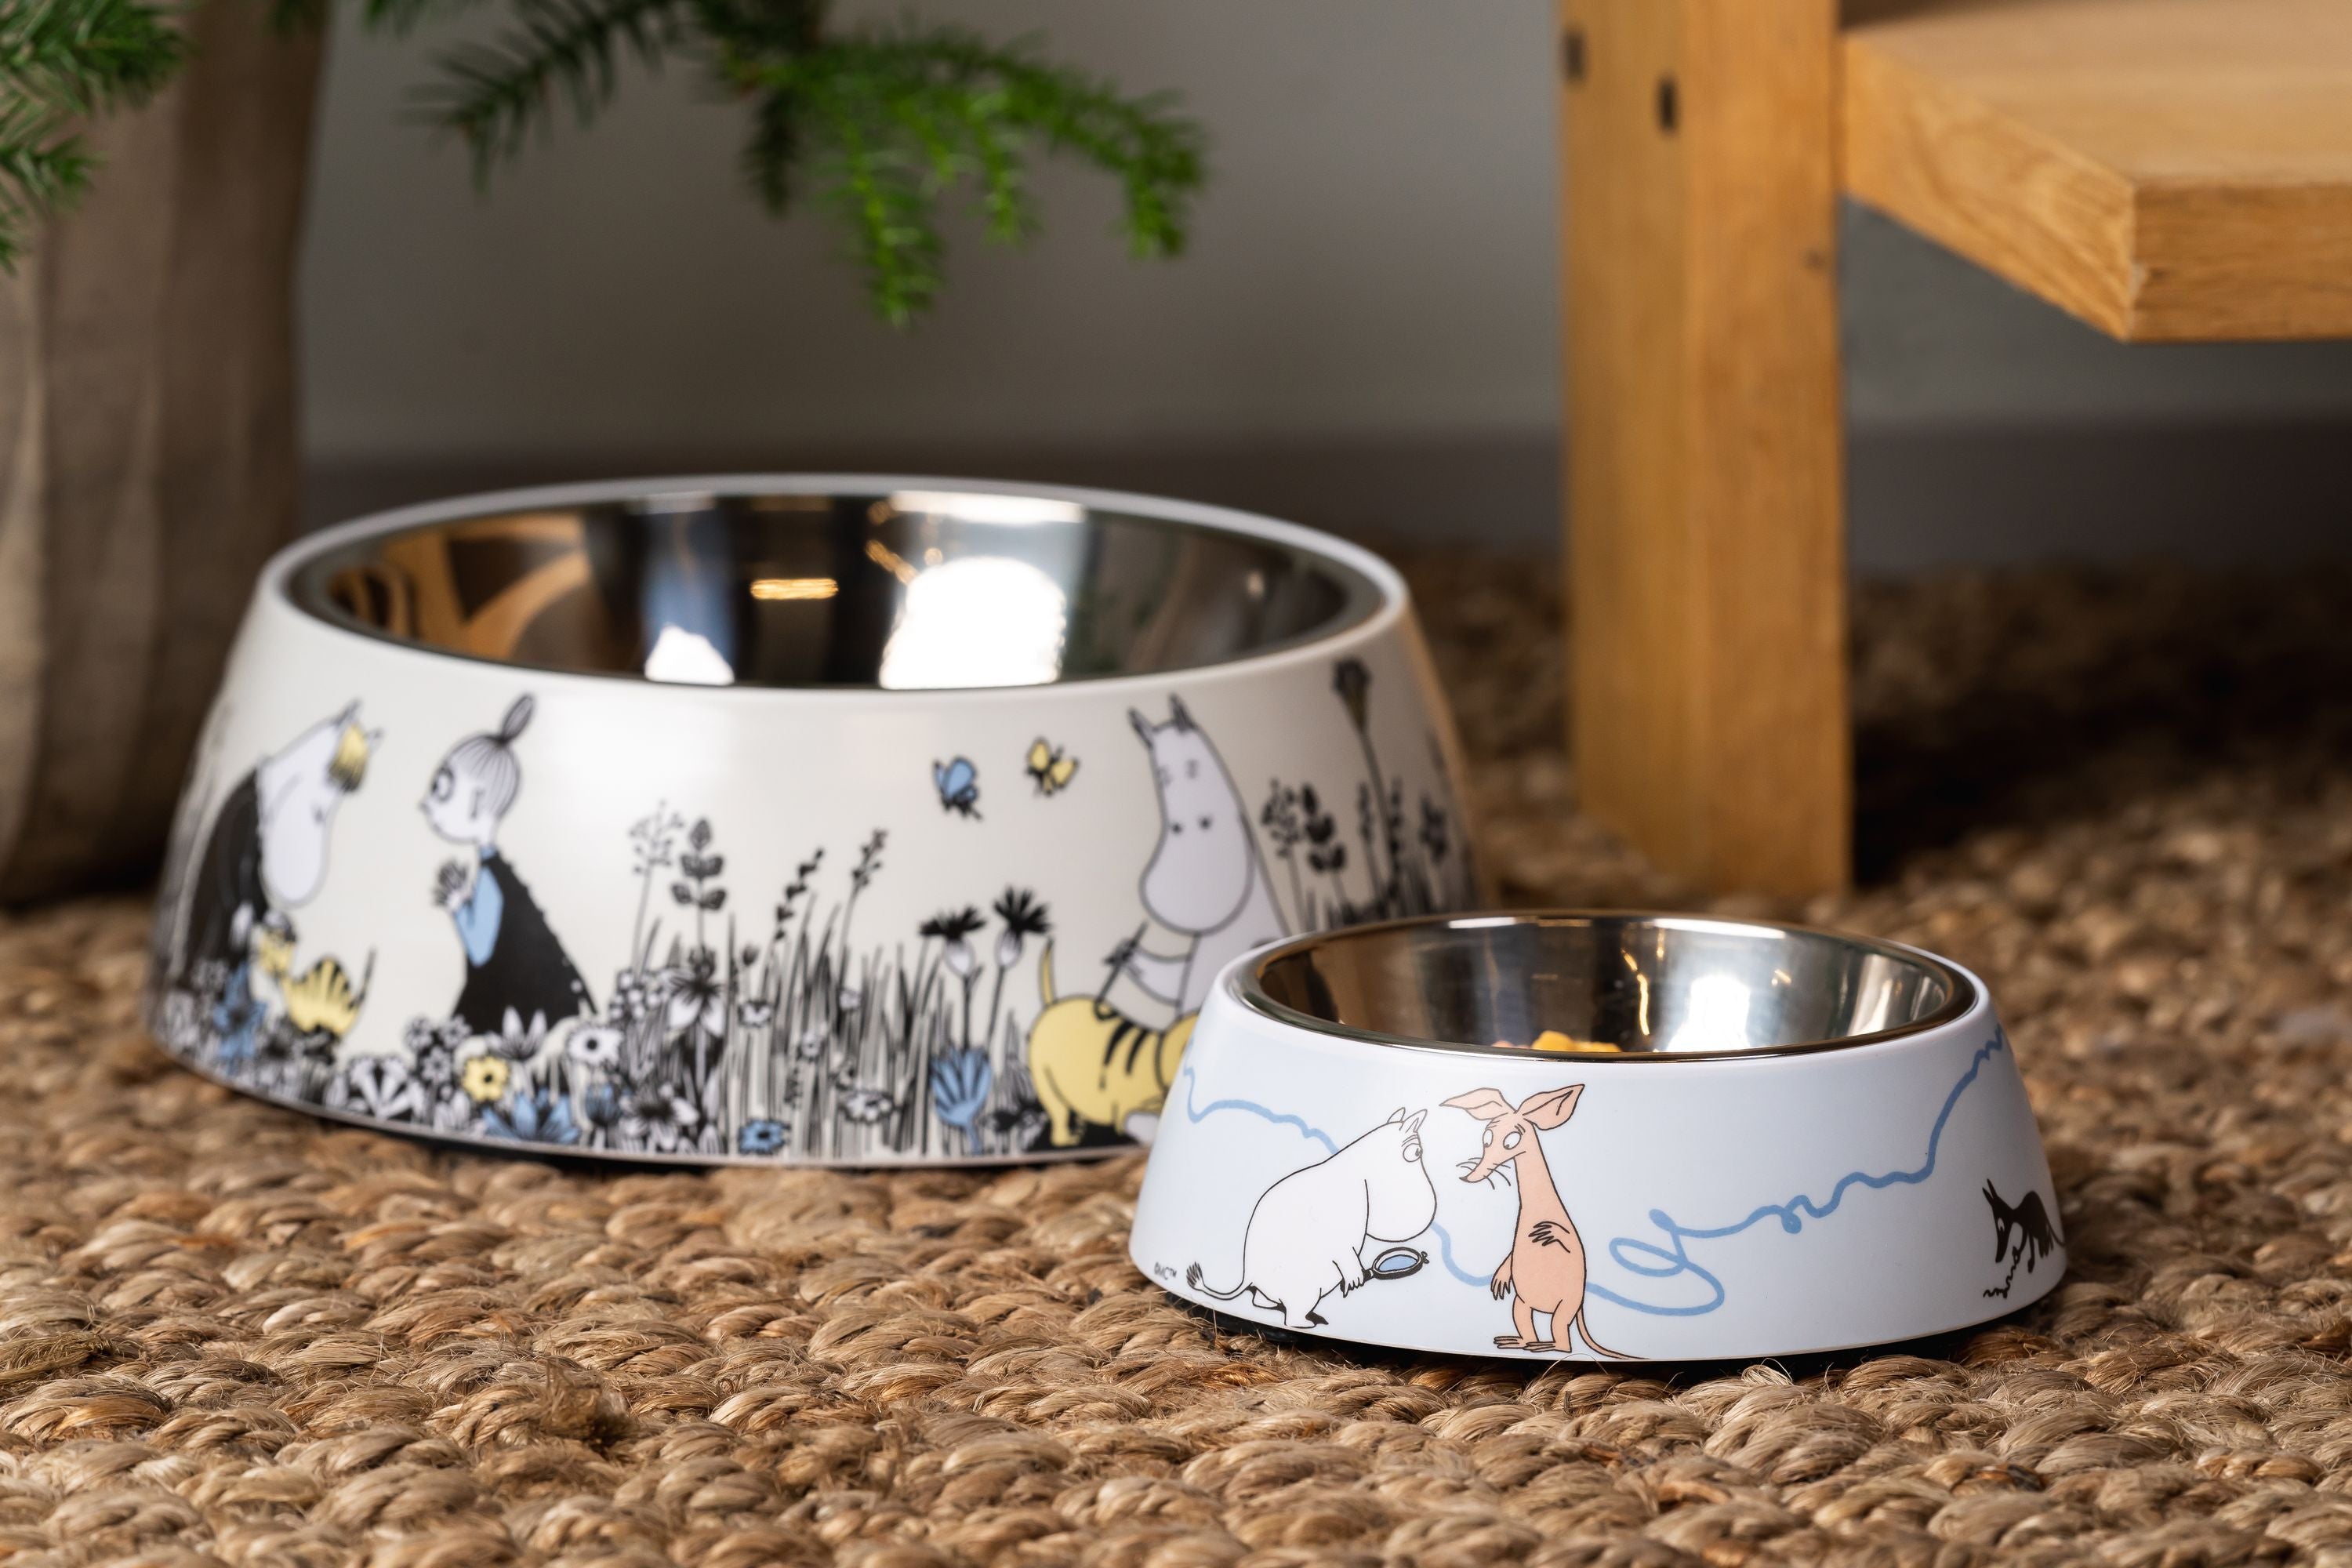 Muurla Moomin Pets Pets Food Bowl S, Blue